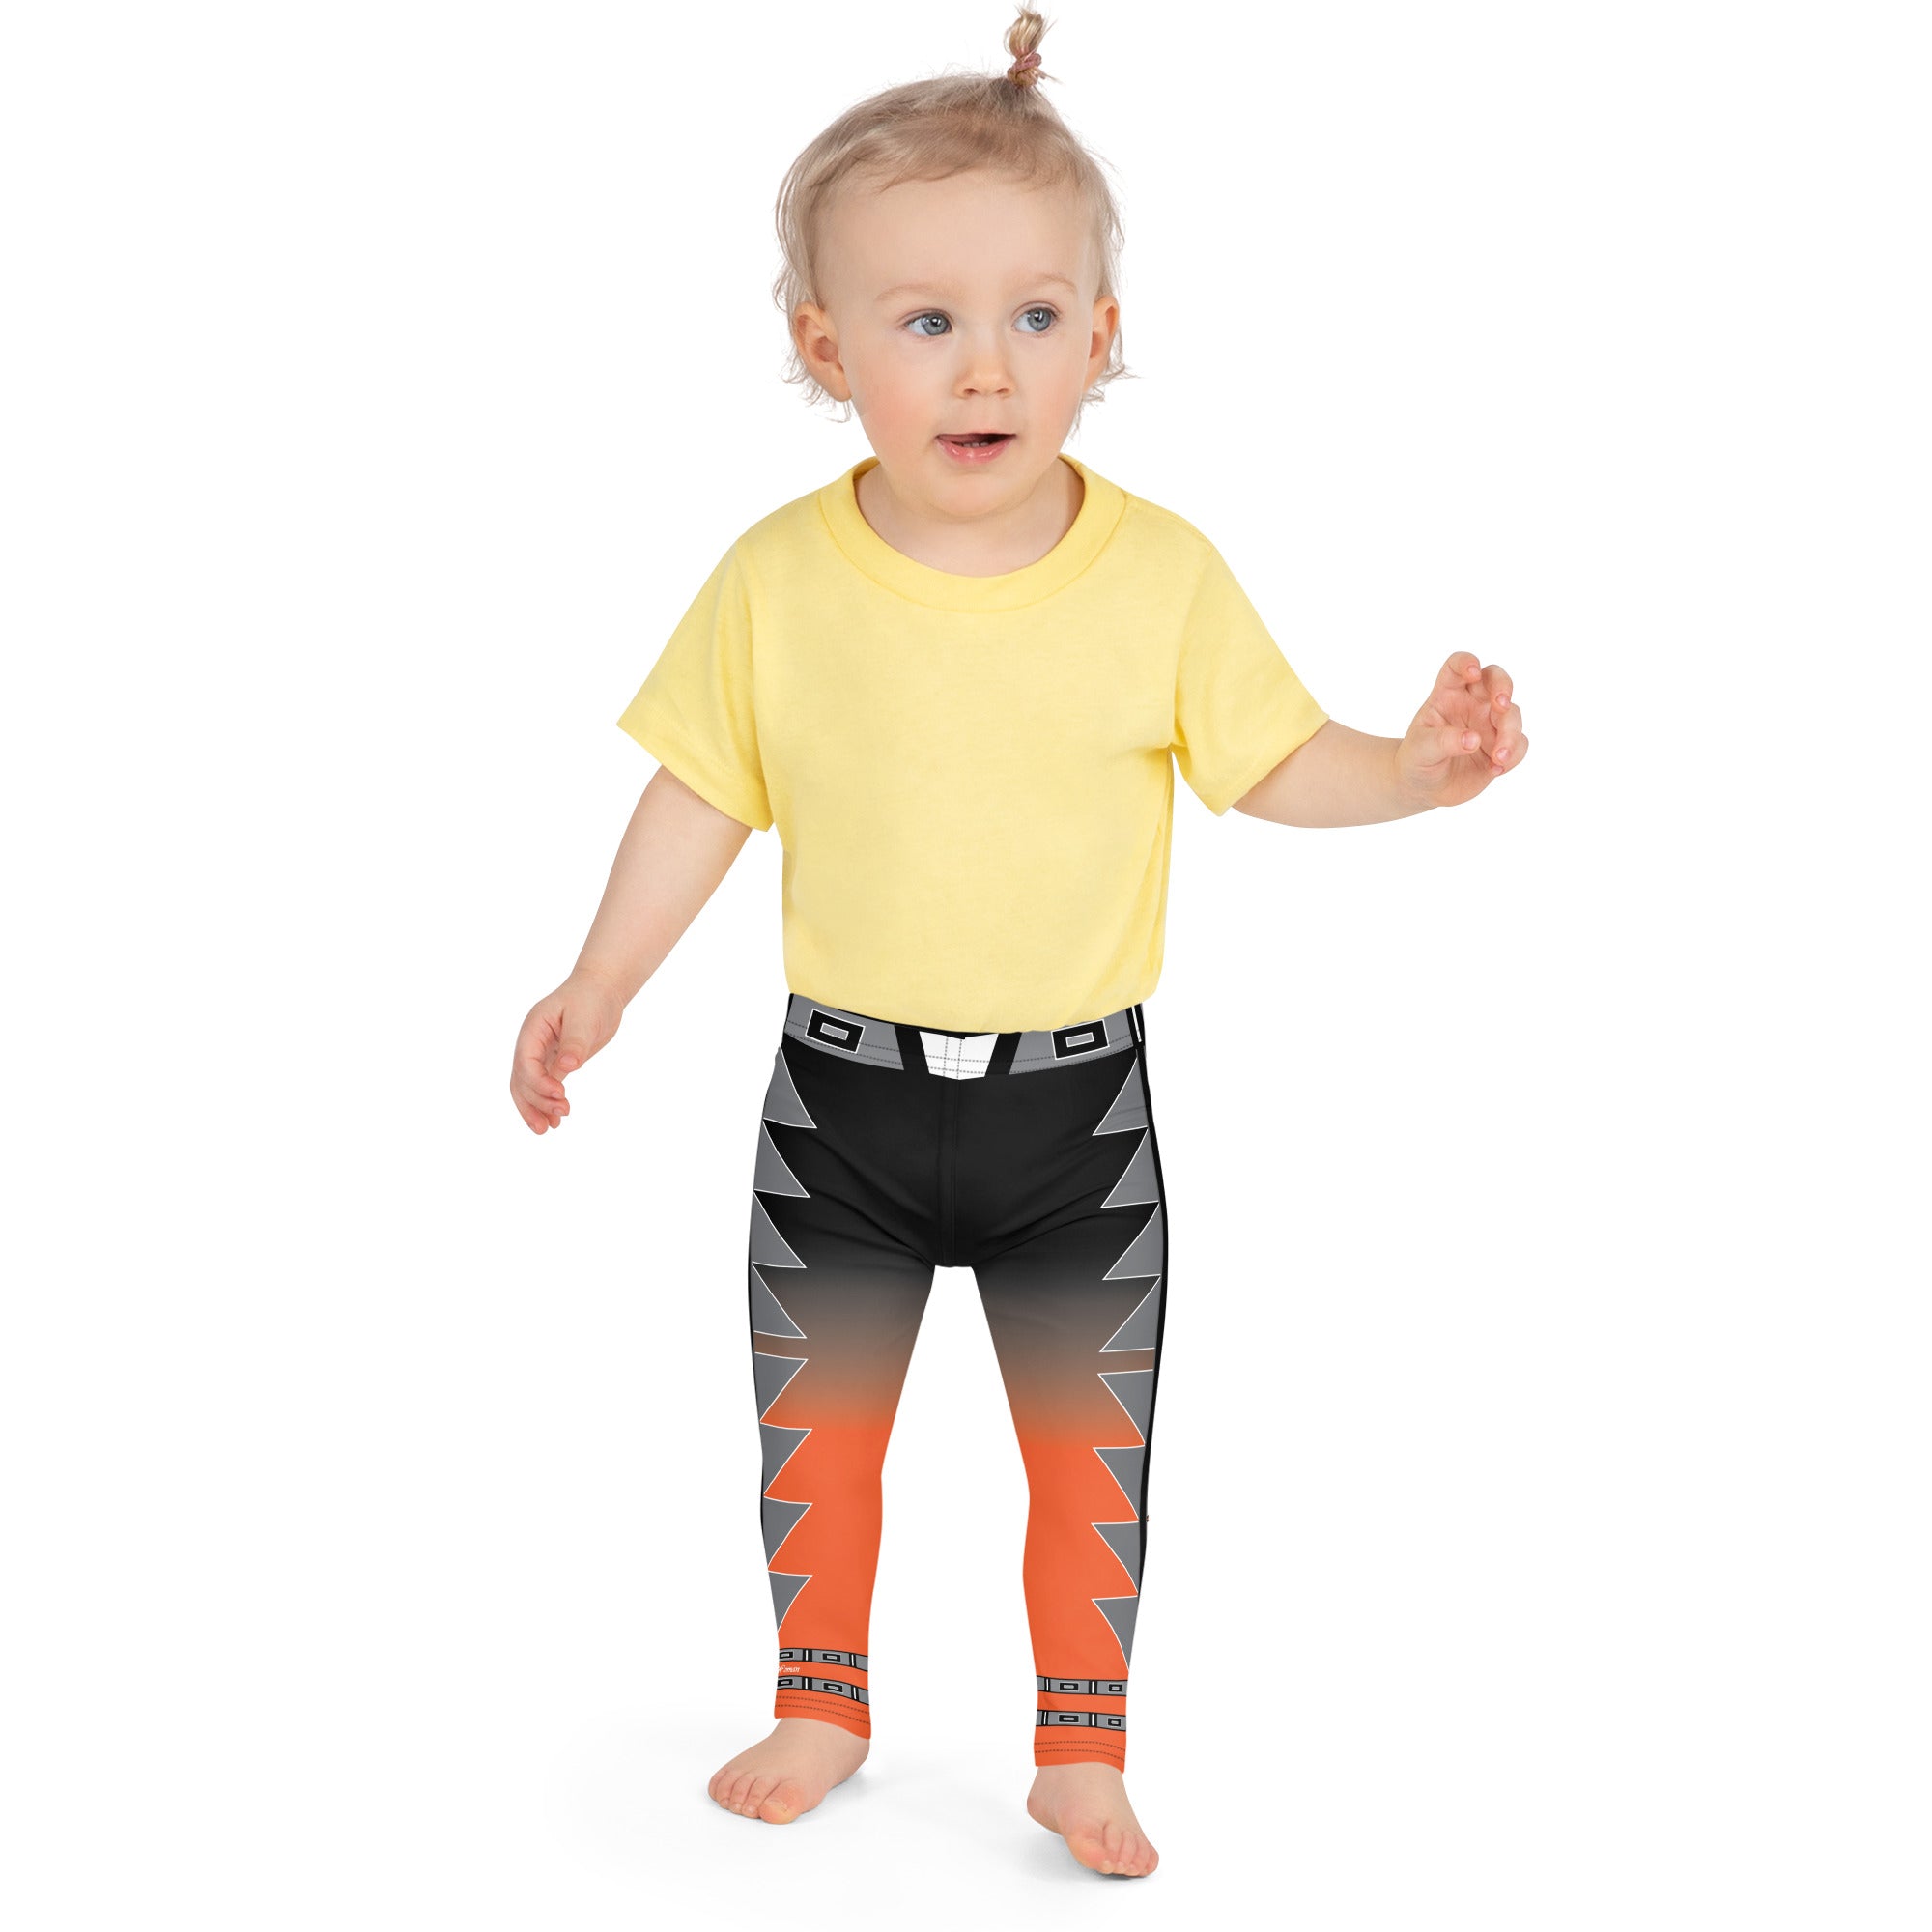 Centered Black and Orange Kid's Leggings 2T-6T